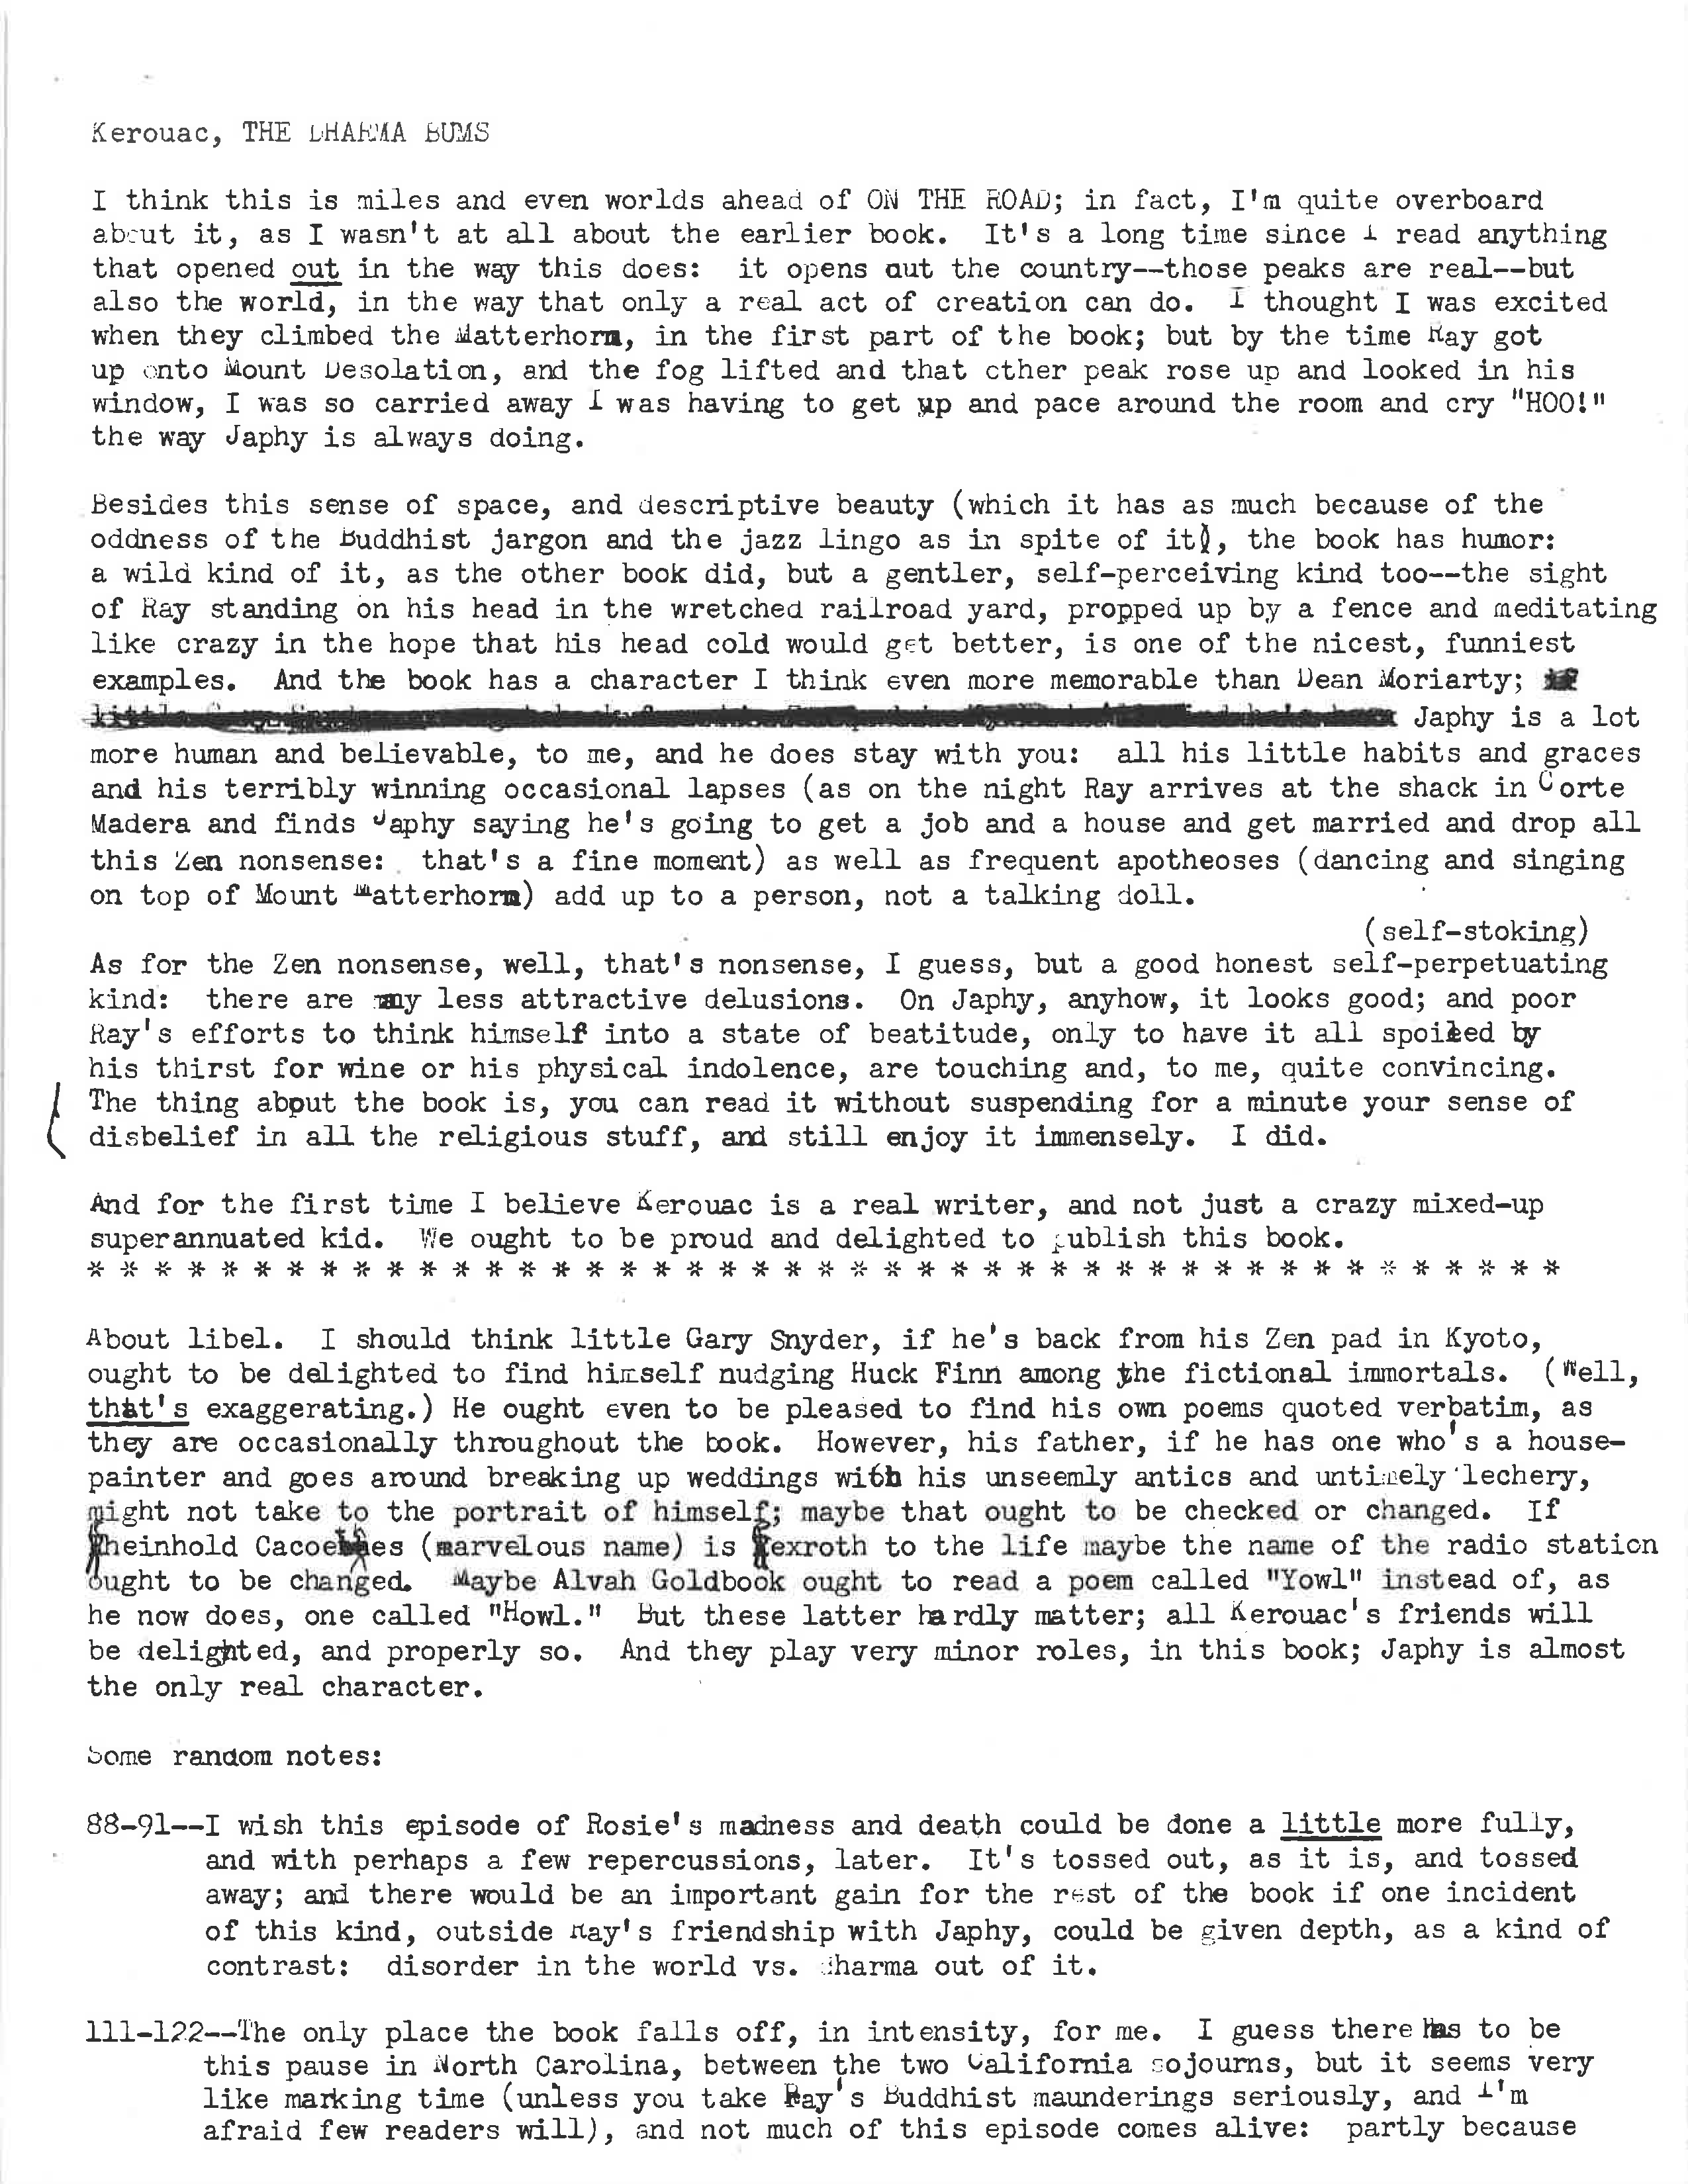 Rapport plus long sur The Dharma Bums daté du 25/02/58 par la rédactrice viking Catharine Carver